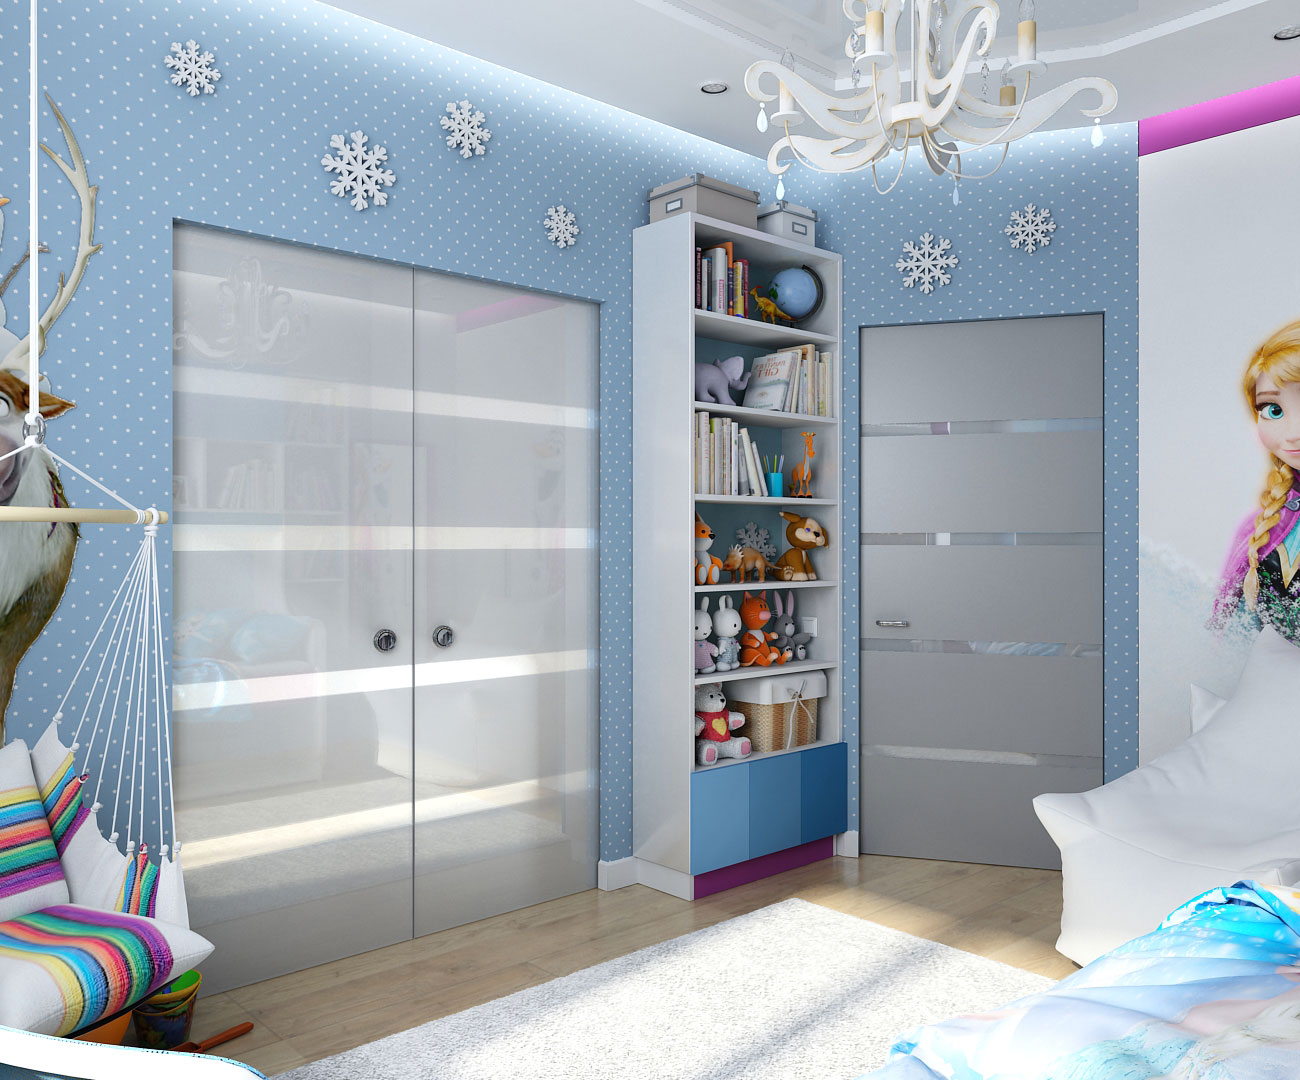 Interior design in stile dei figli di "congelato" in Chernigov in 3d max vray 1.5 immagine